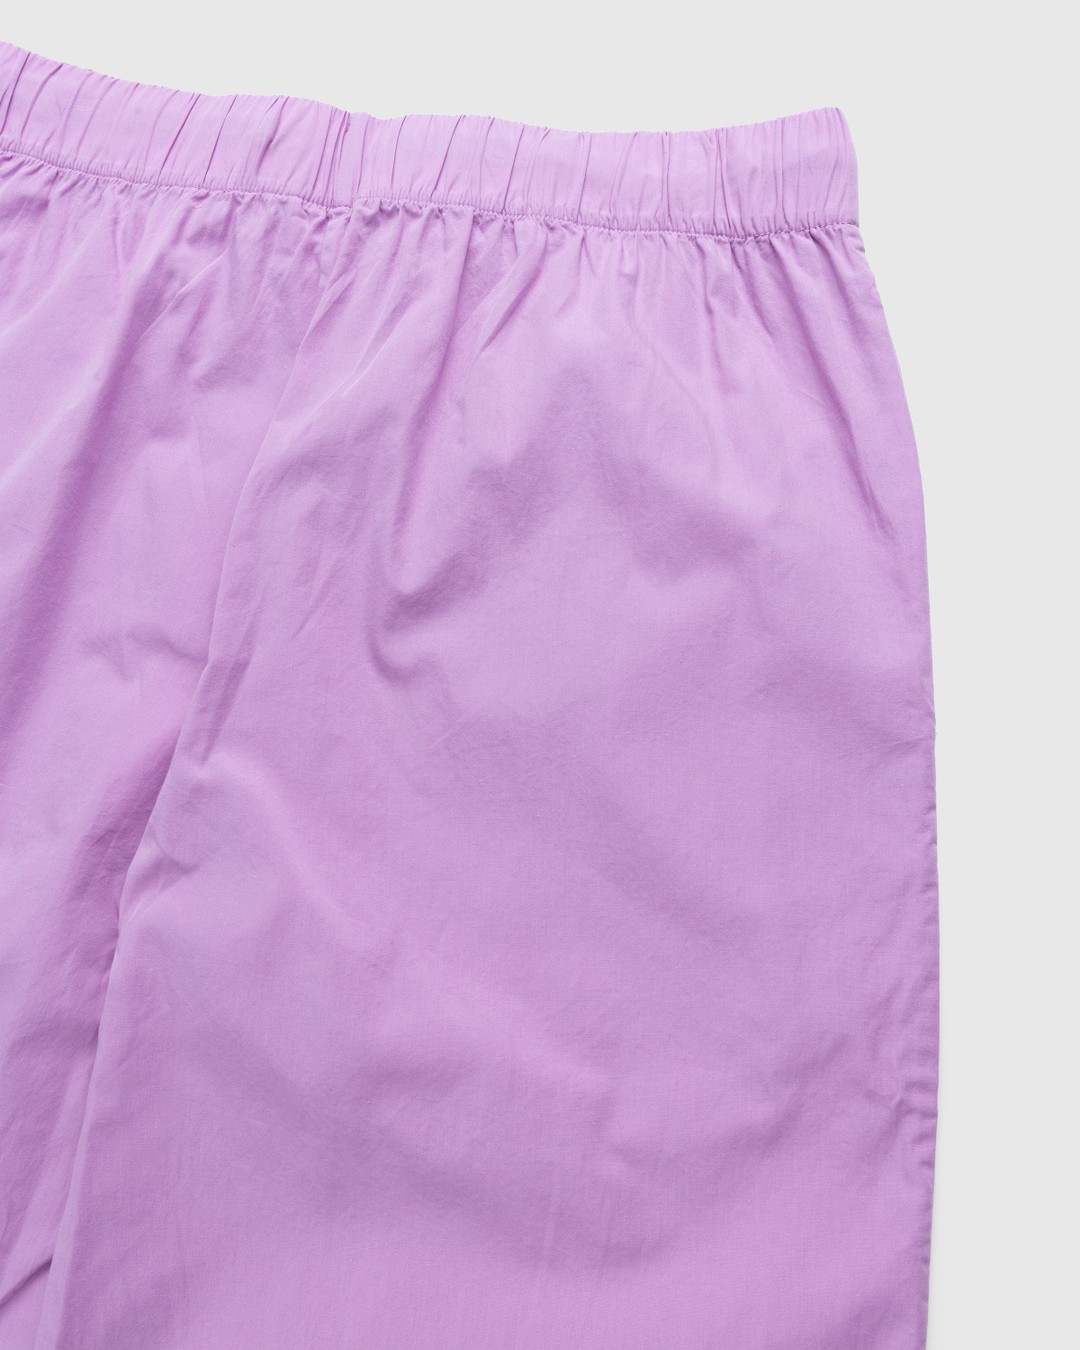 Tekla – Cotton Poplin Pyjamas Pants Purple Pink - Pyjamas - Pink - Image 4